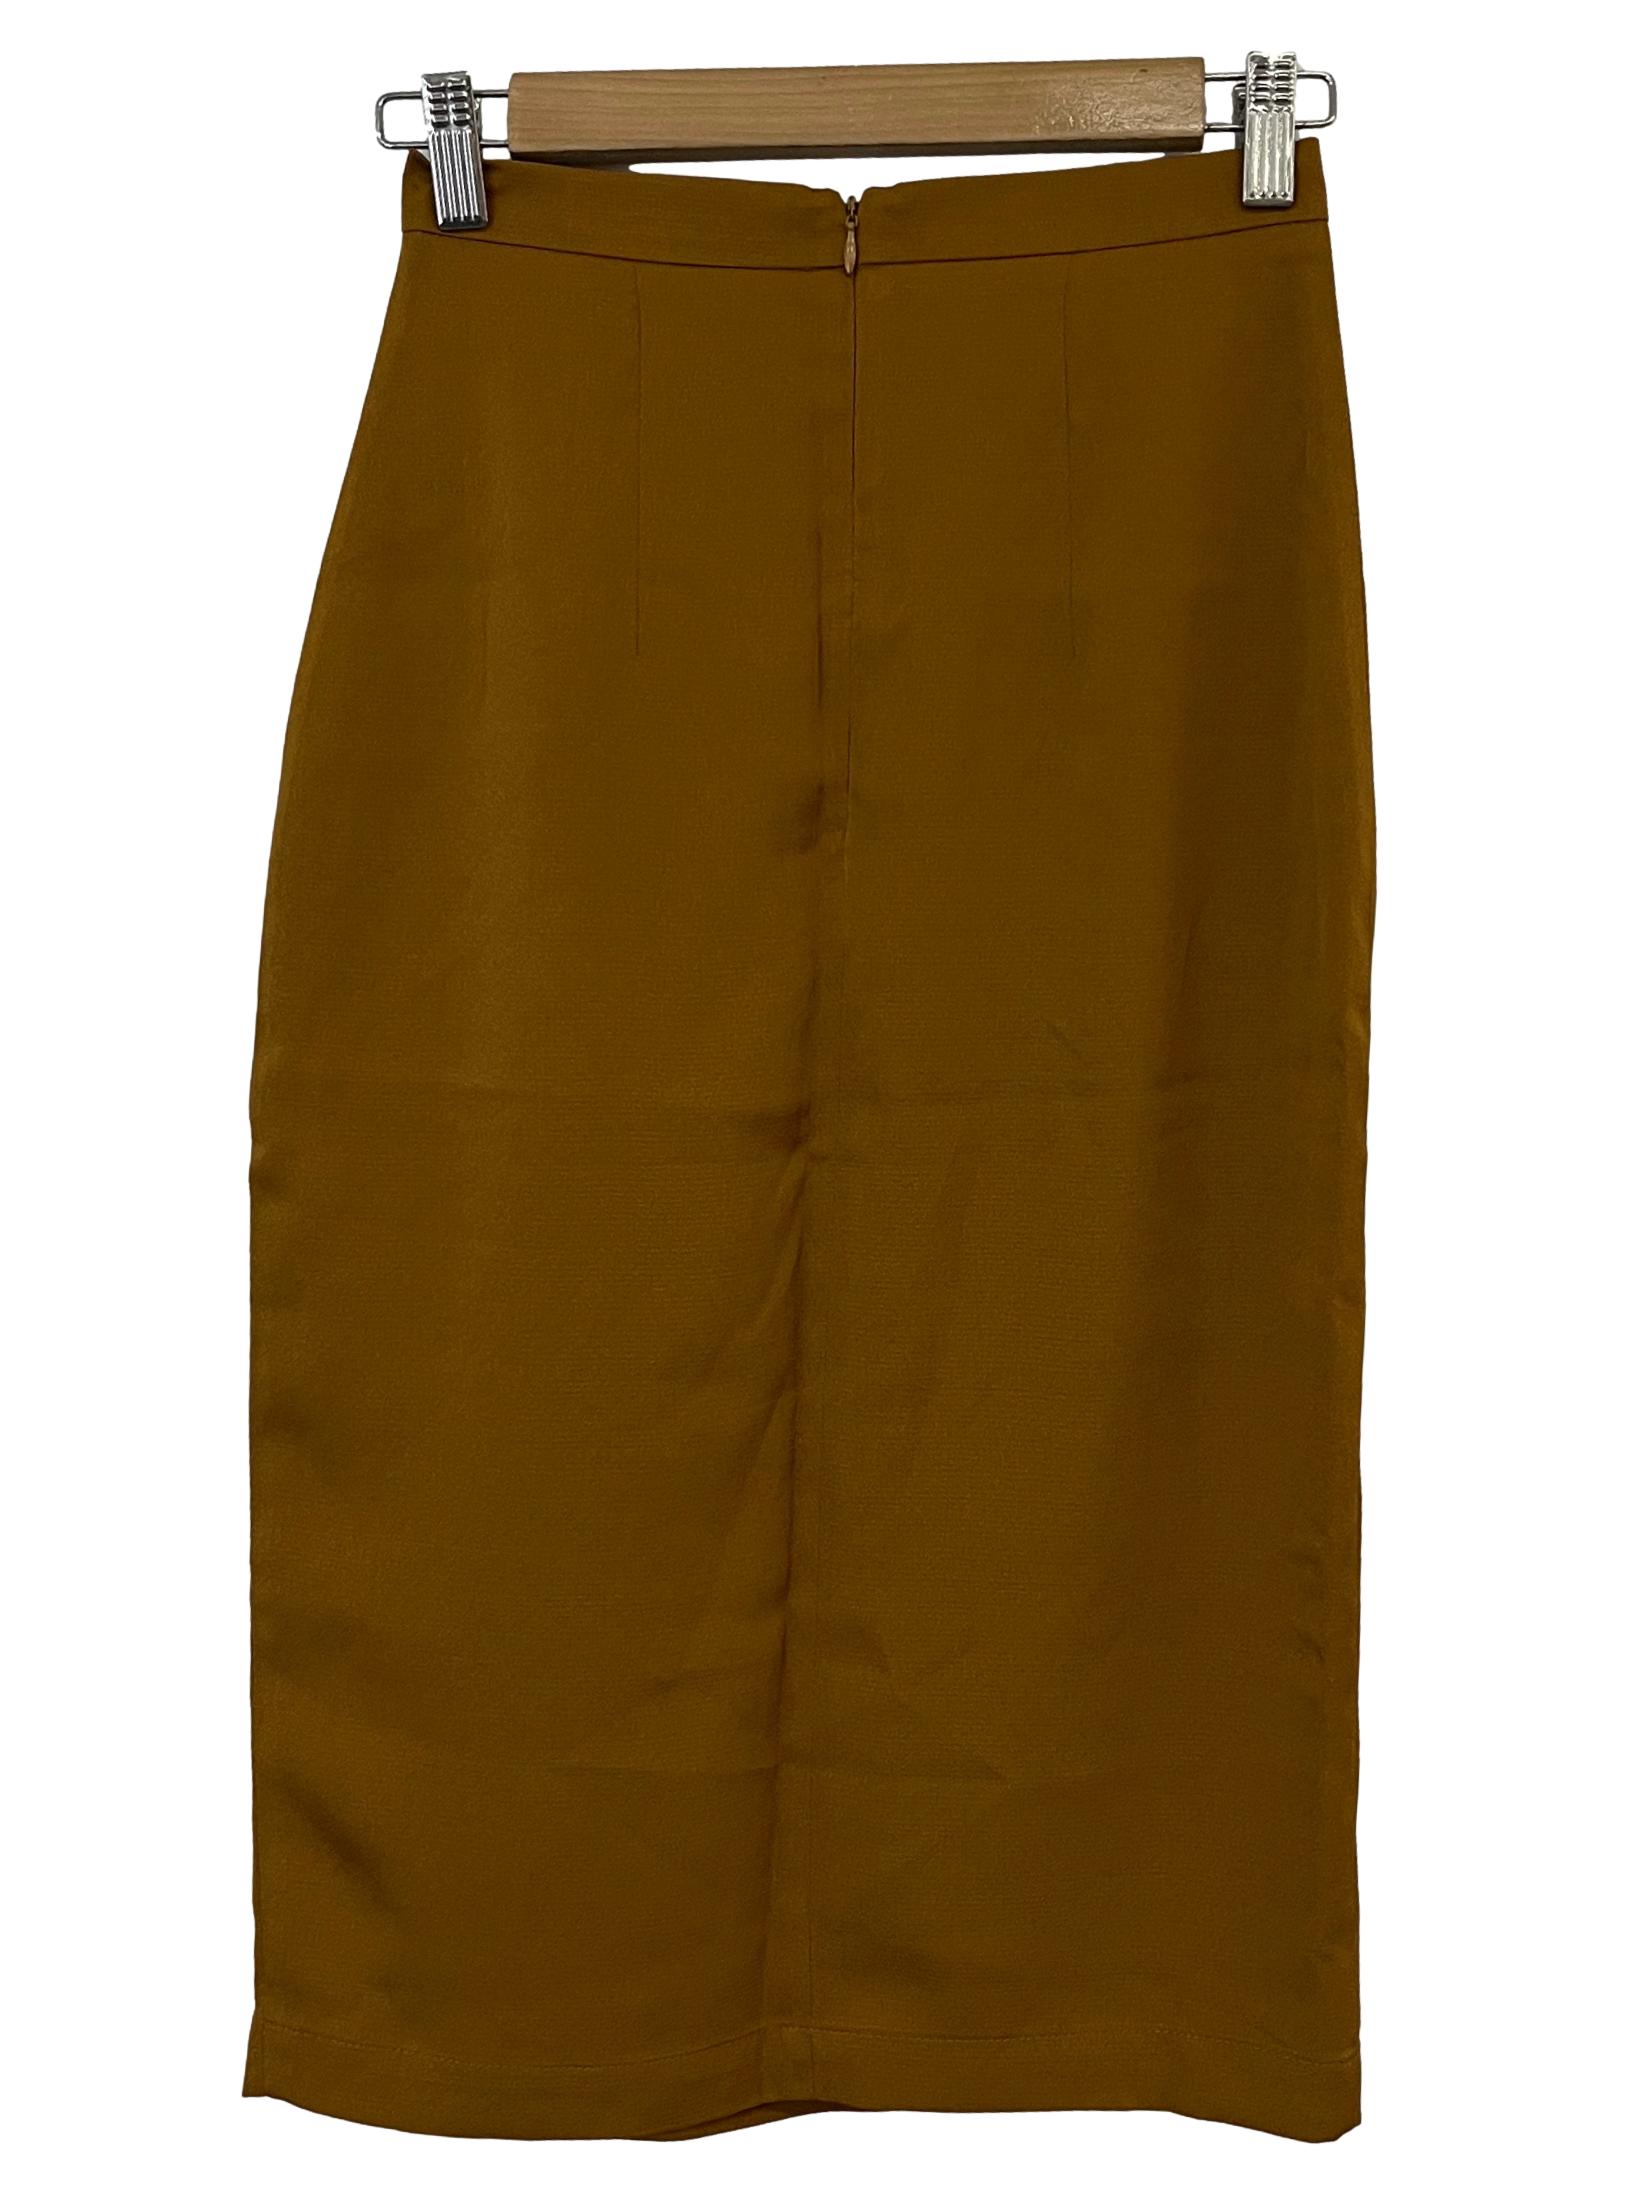 Burnt Orange Asymmetrical Skirt LB